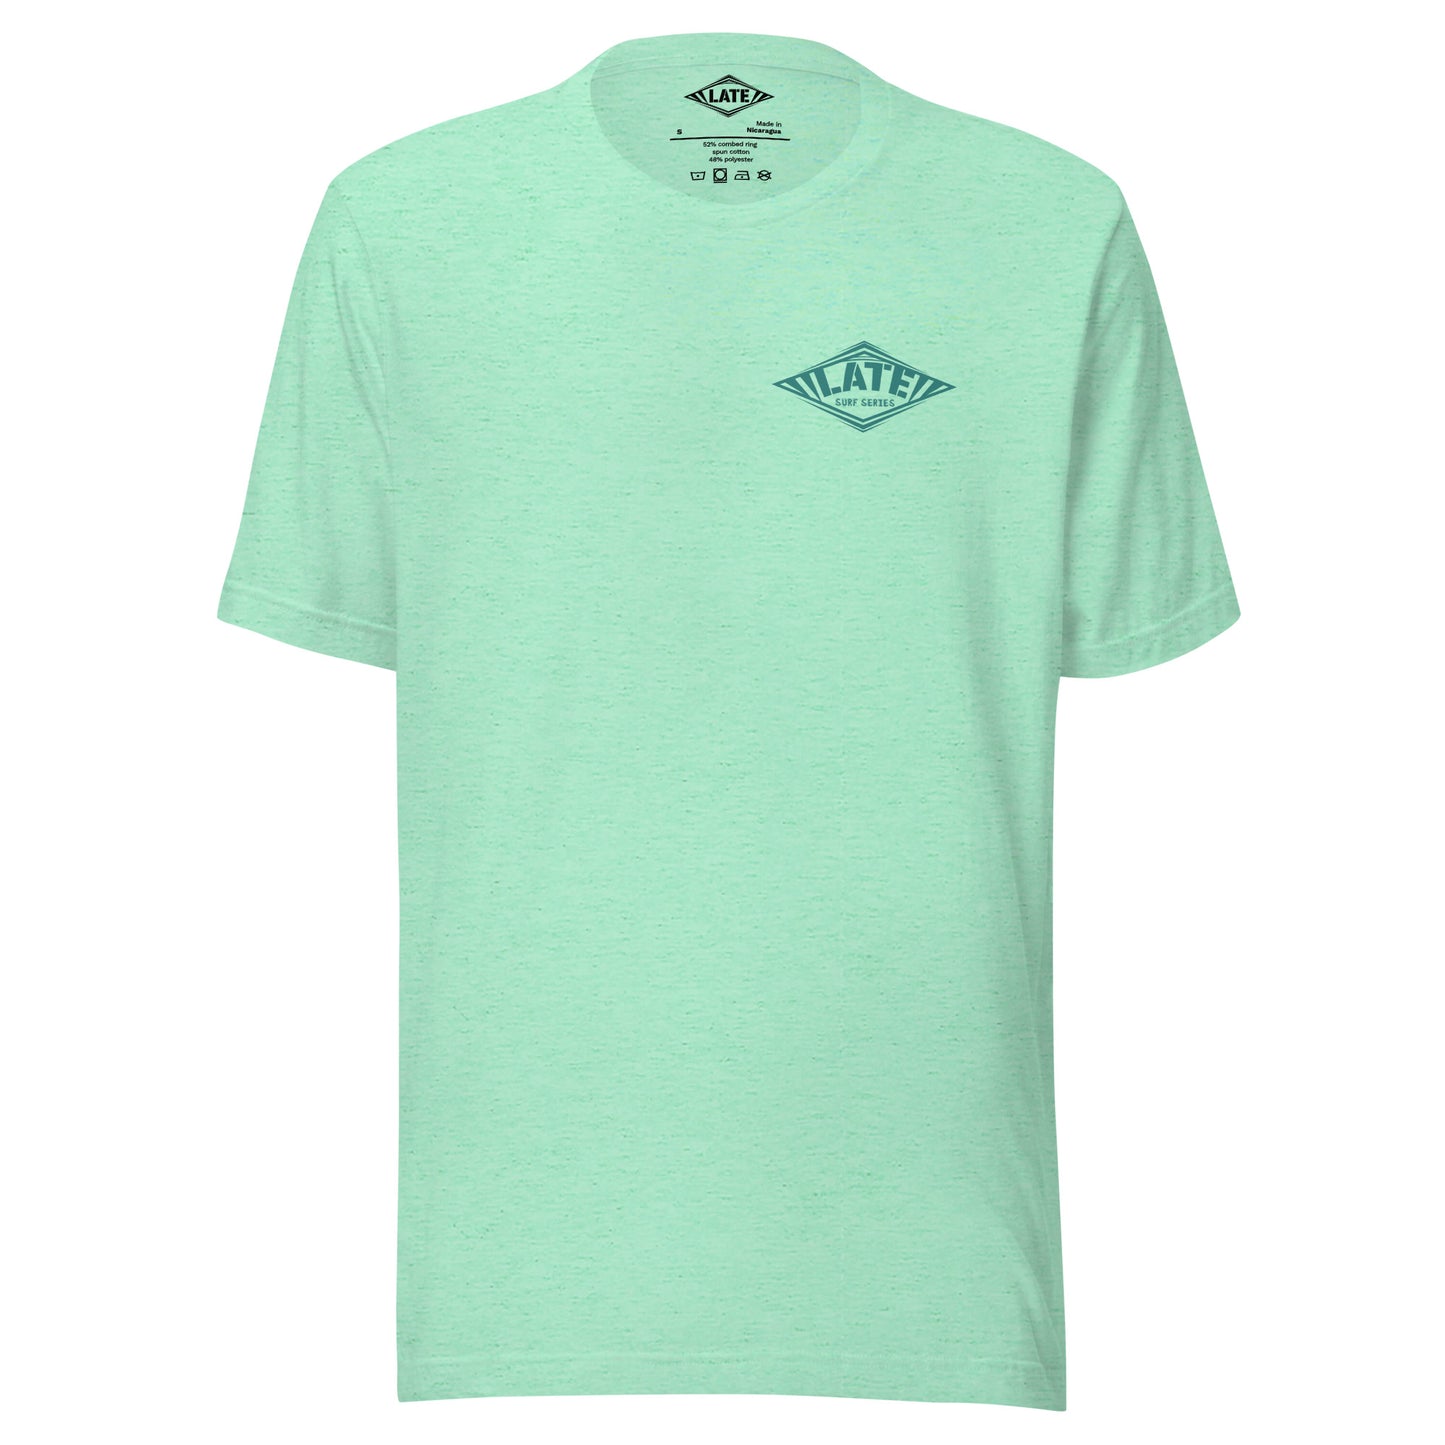 T-Shirt surfing avec Logo Late et texte surf series face et couleur heather mint